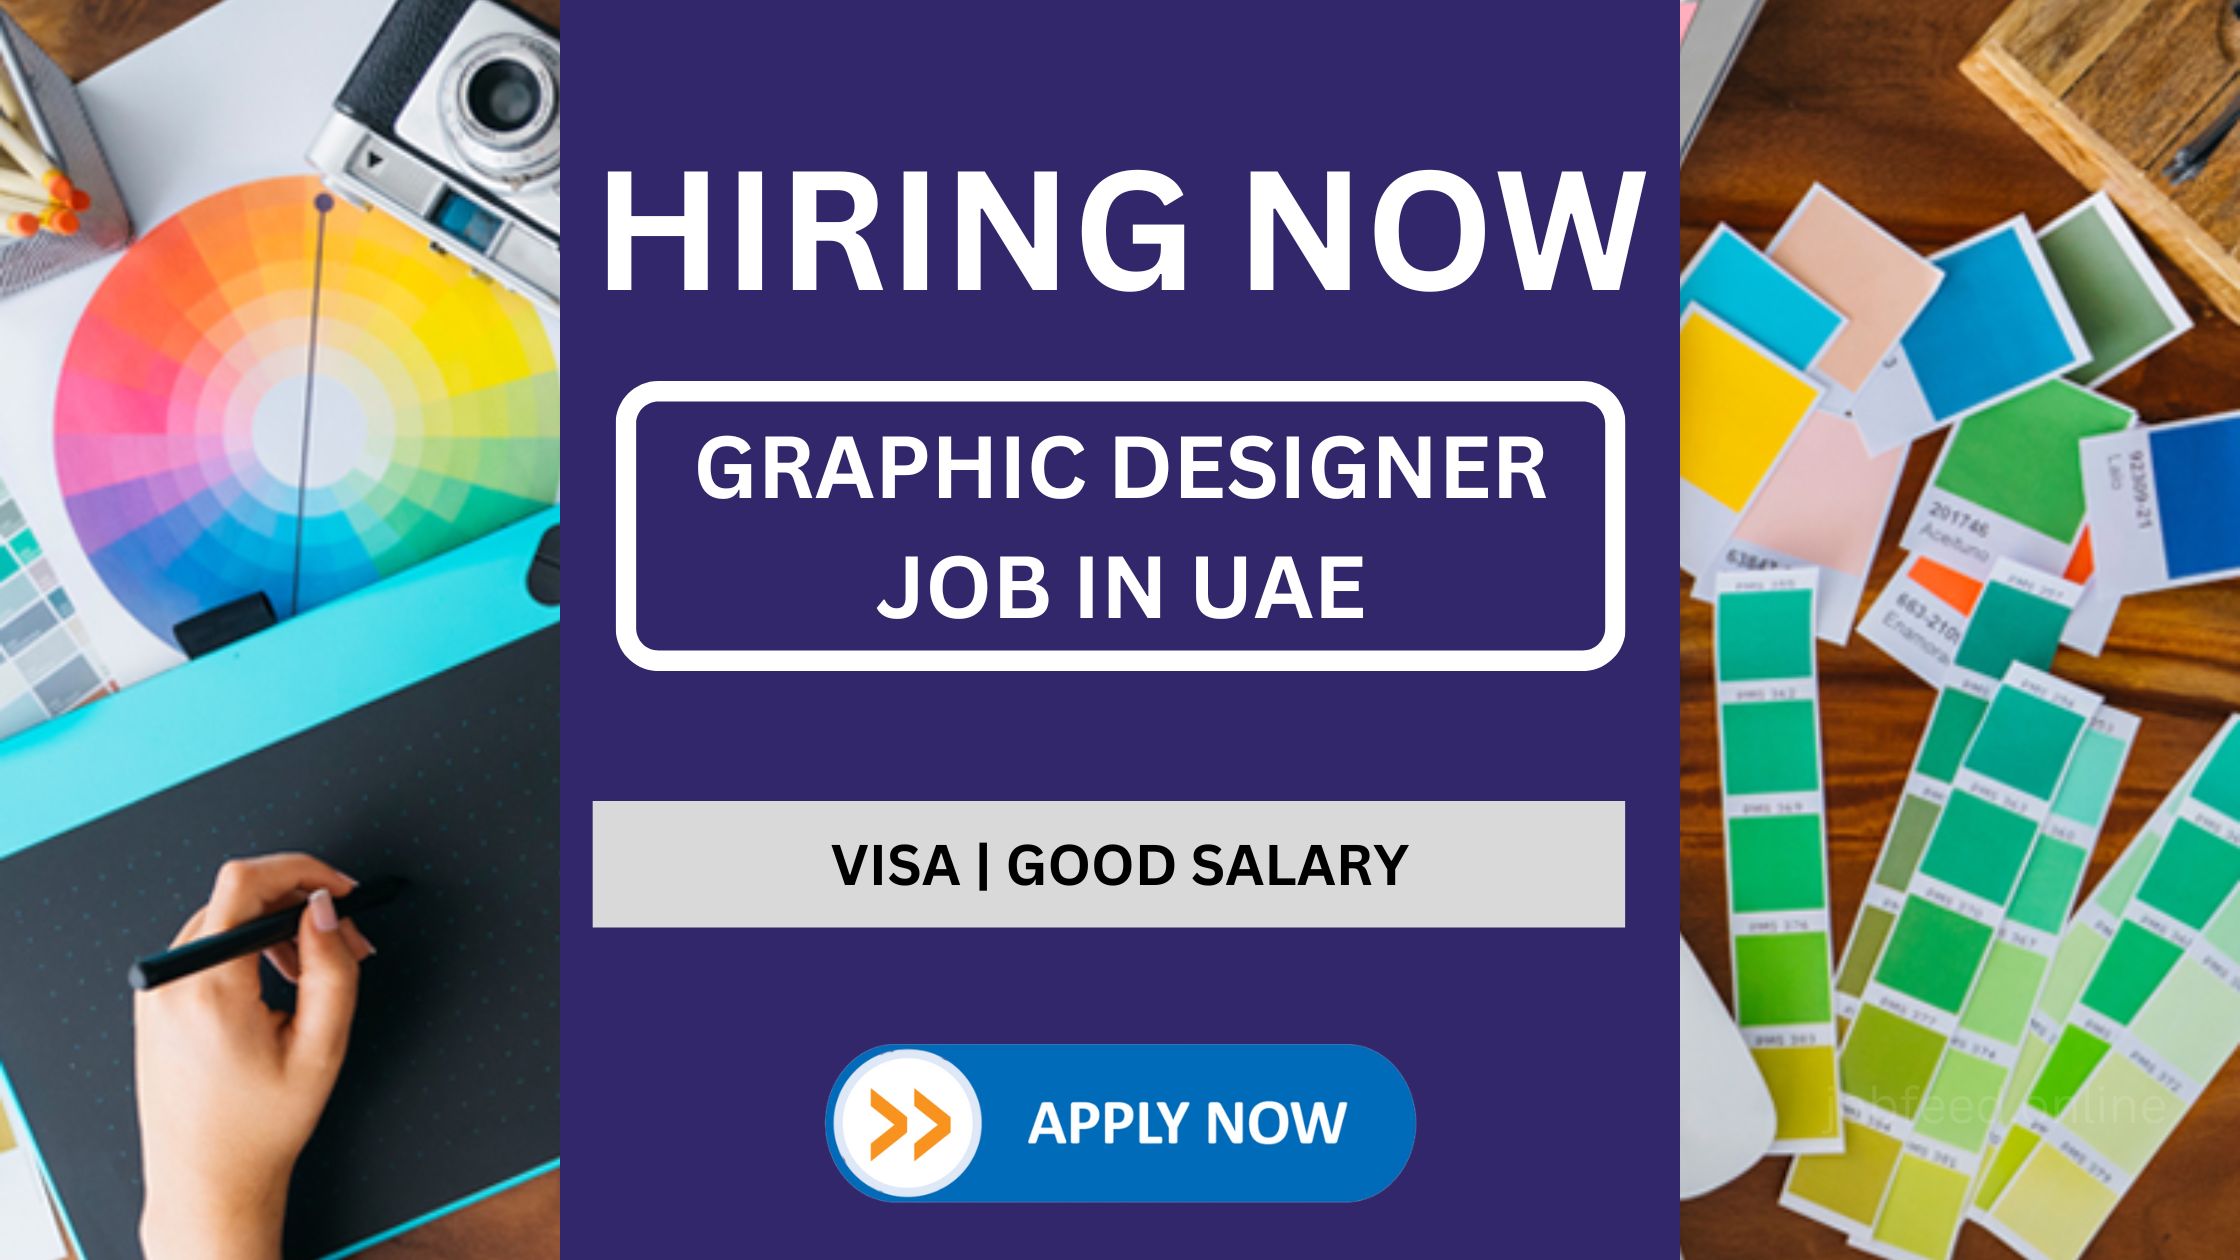 GRAPHIC DESIGNER JOB IN UAE